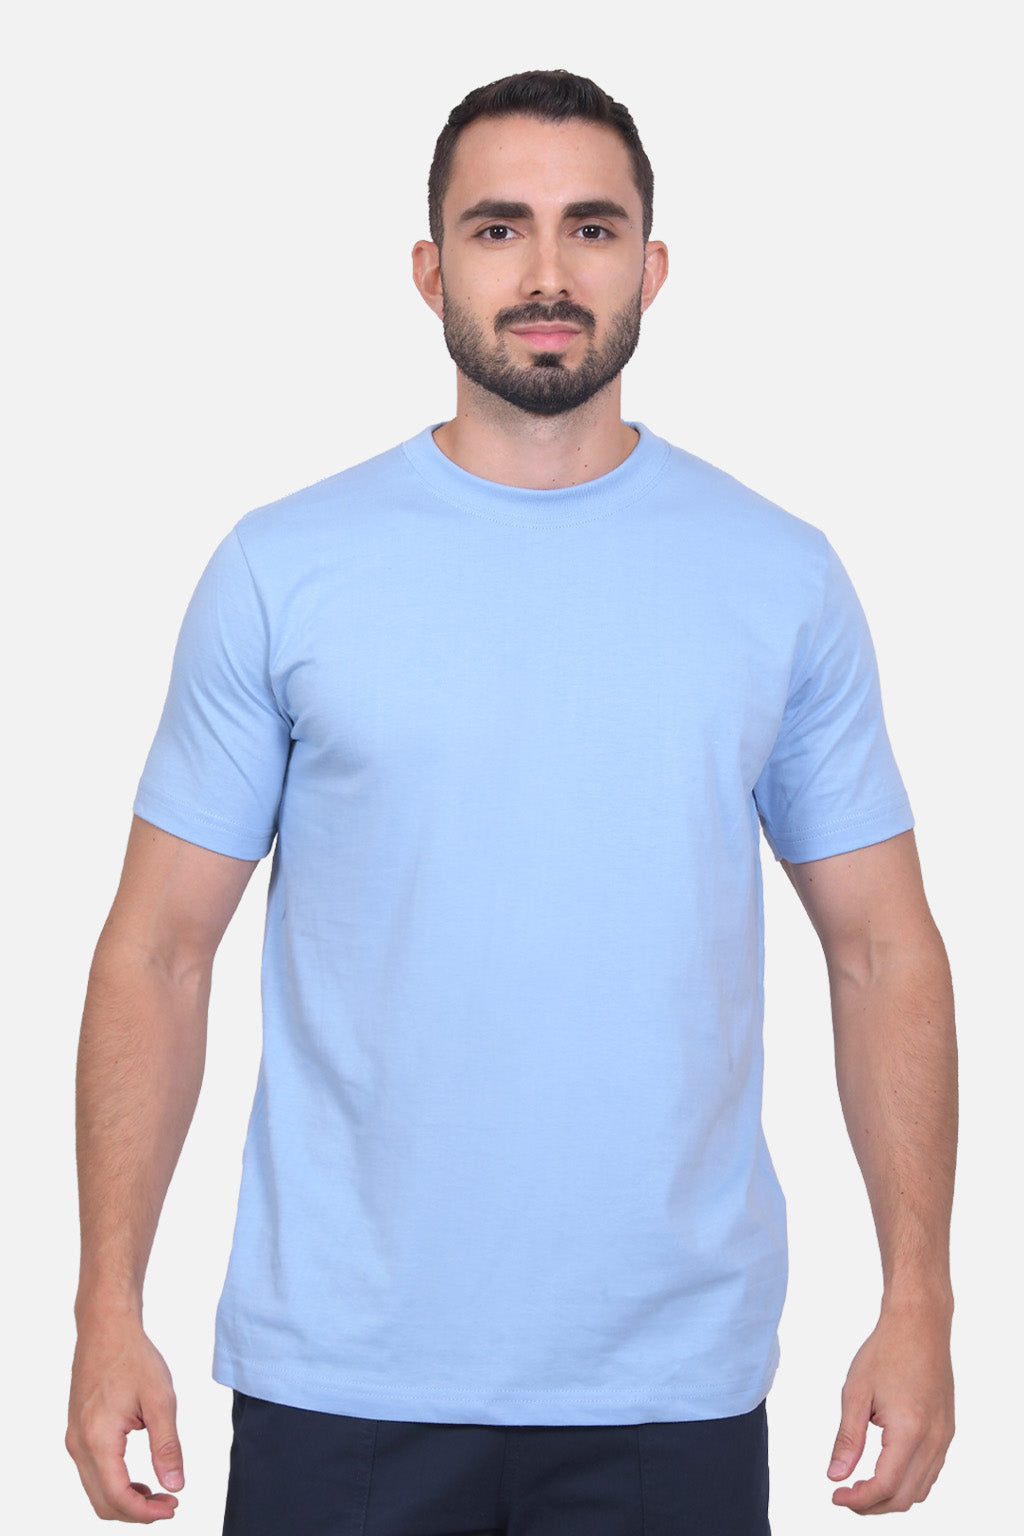 Camiseta Hombre Azul Claro 